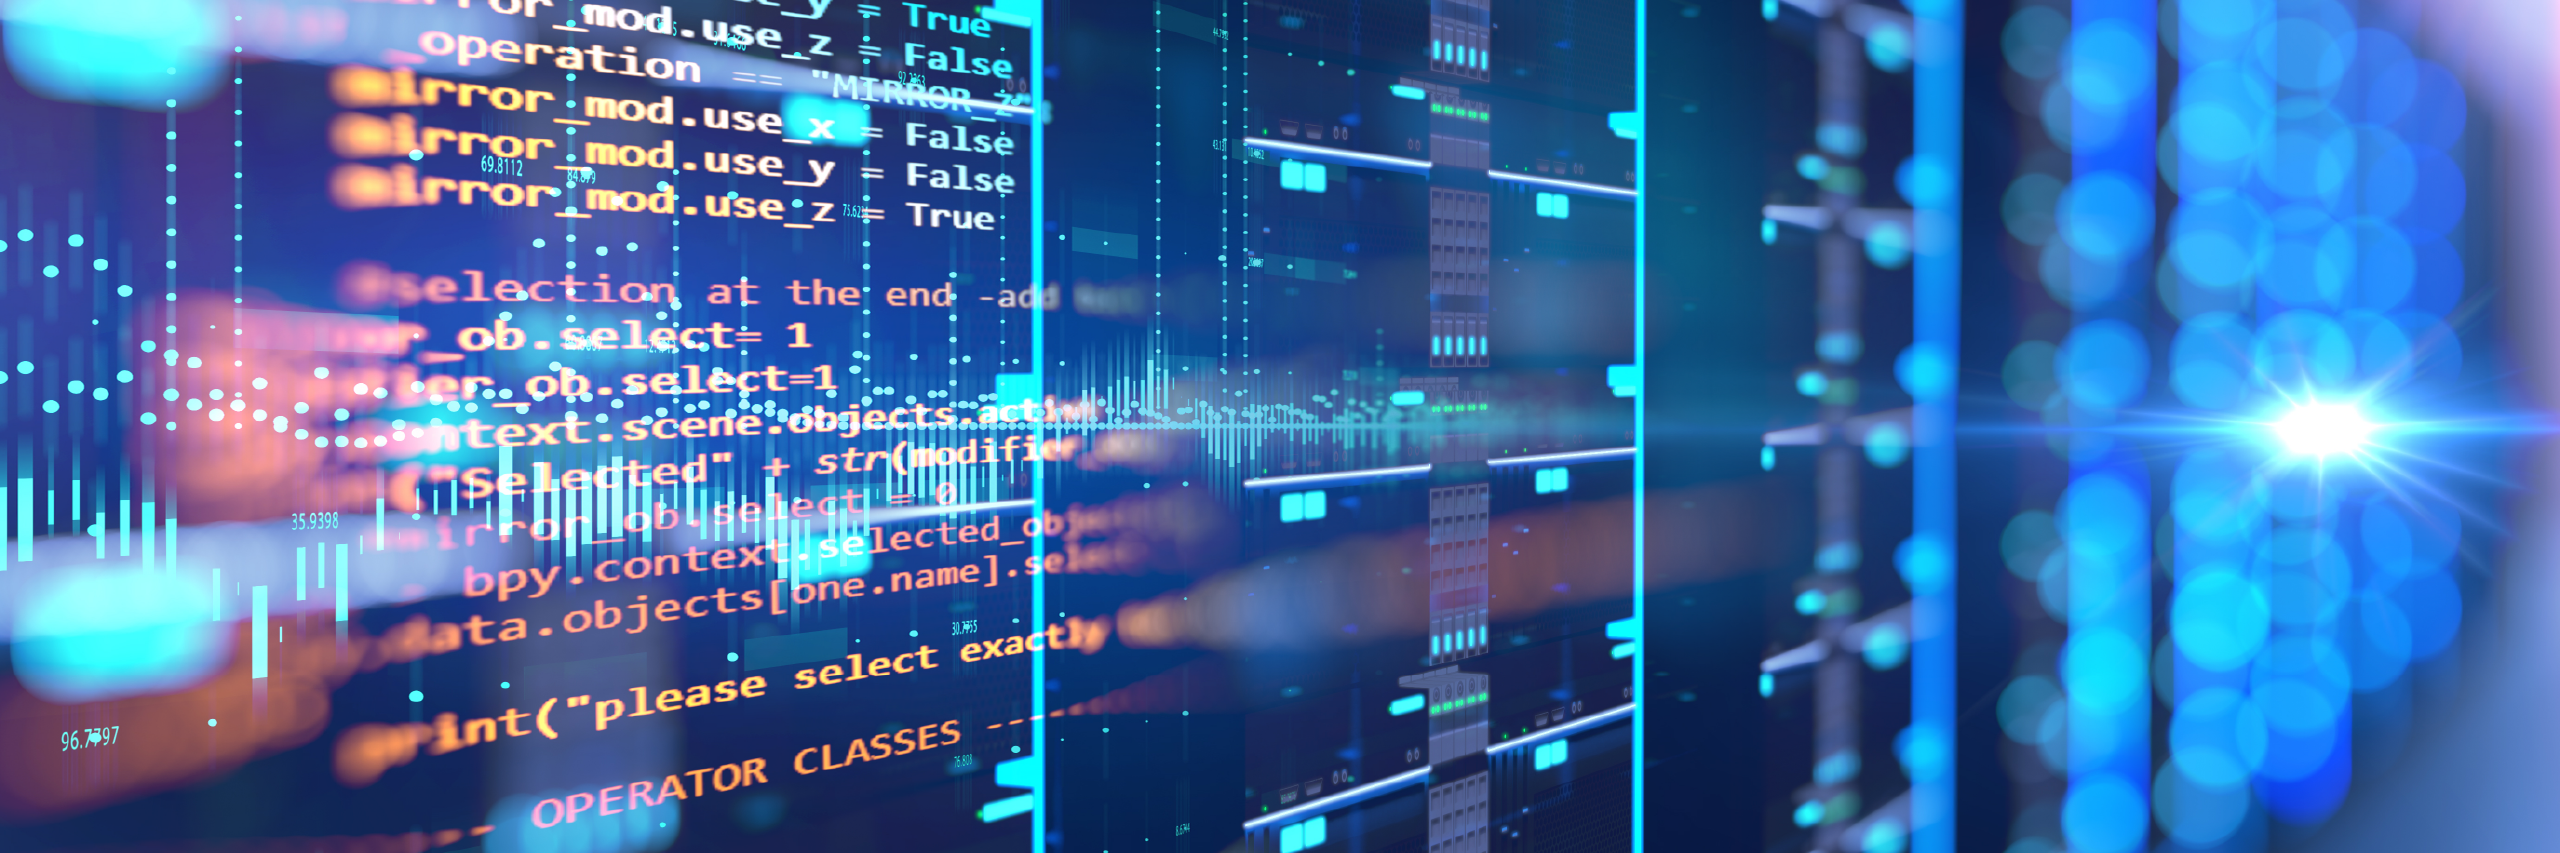 Une salle de serveurs affichant en superposition une programmation de données, montrant des renseignements vulnérables exposés à des risques de cyber-sécurité